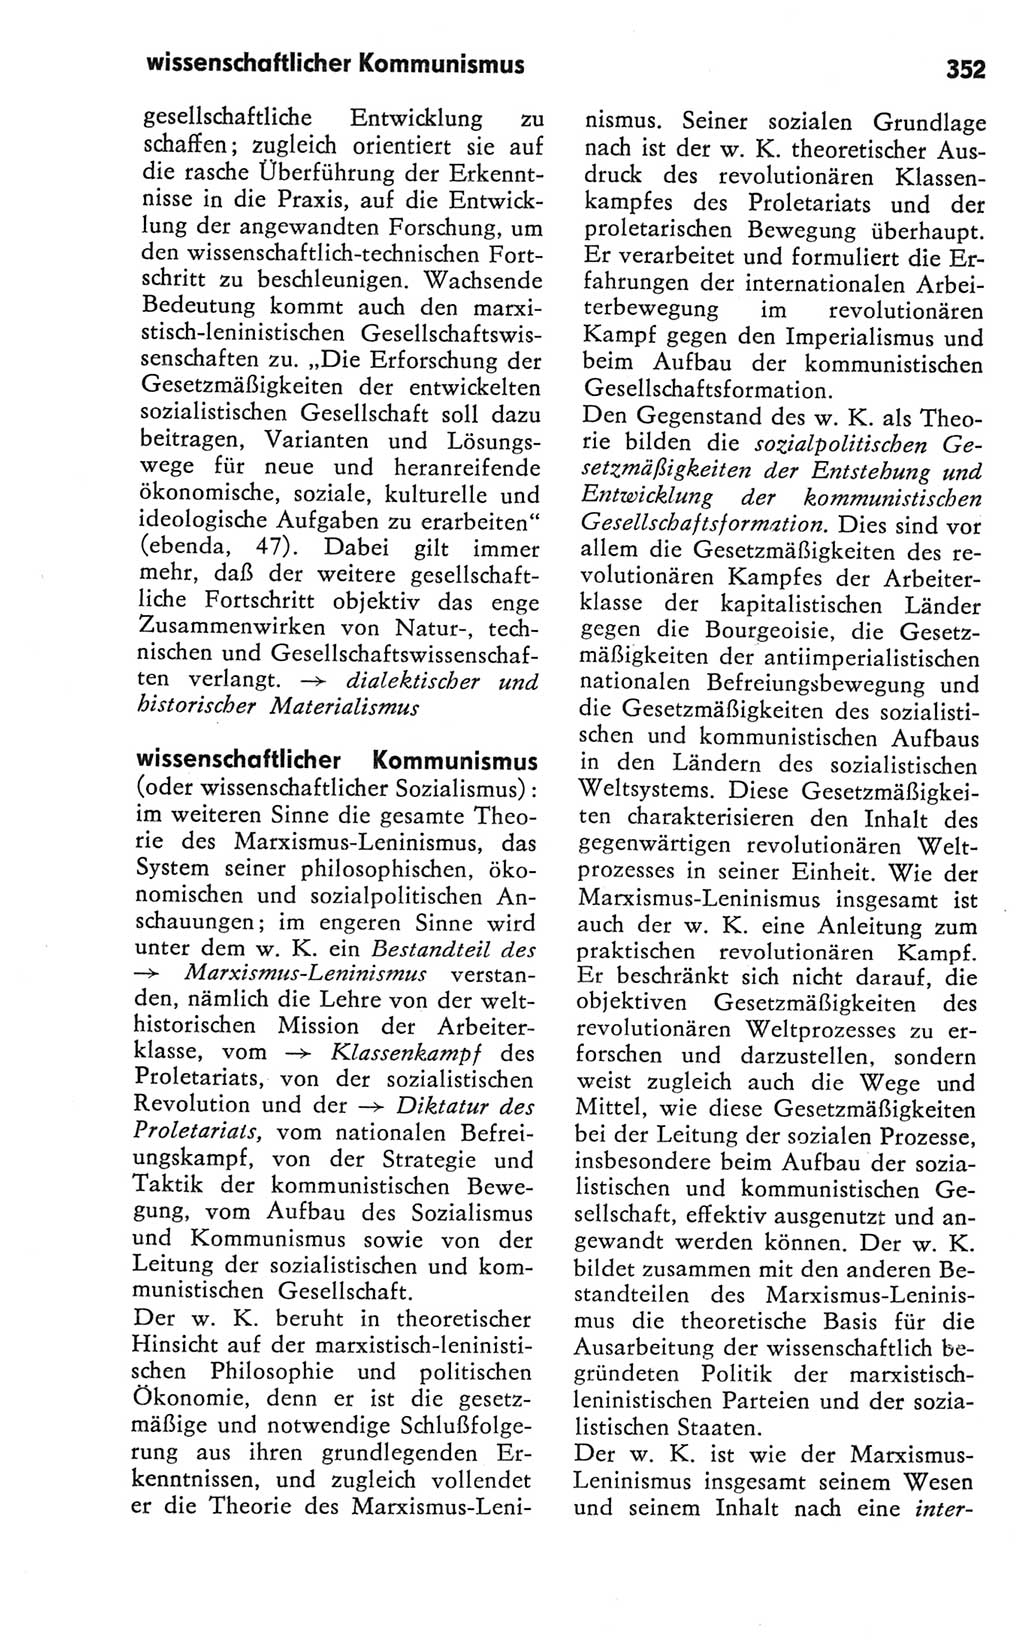 Kleines Wörterbuch der marxistisch-leninistischen Philosophie [Deutsche Demokratische Republik (DDR)] 1981, Seite 352 (Kl. Wb. ML Phil. DDR 1981, S. 352)